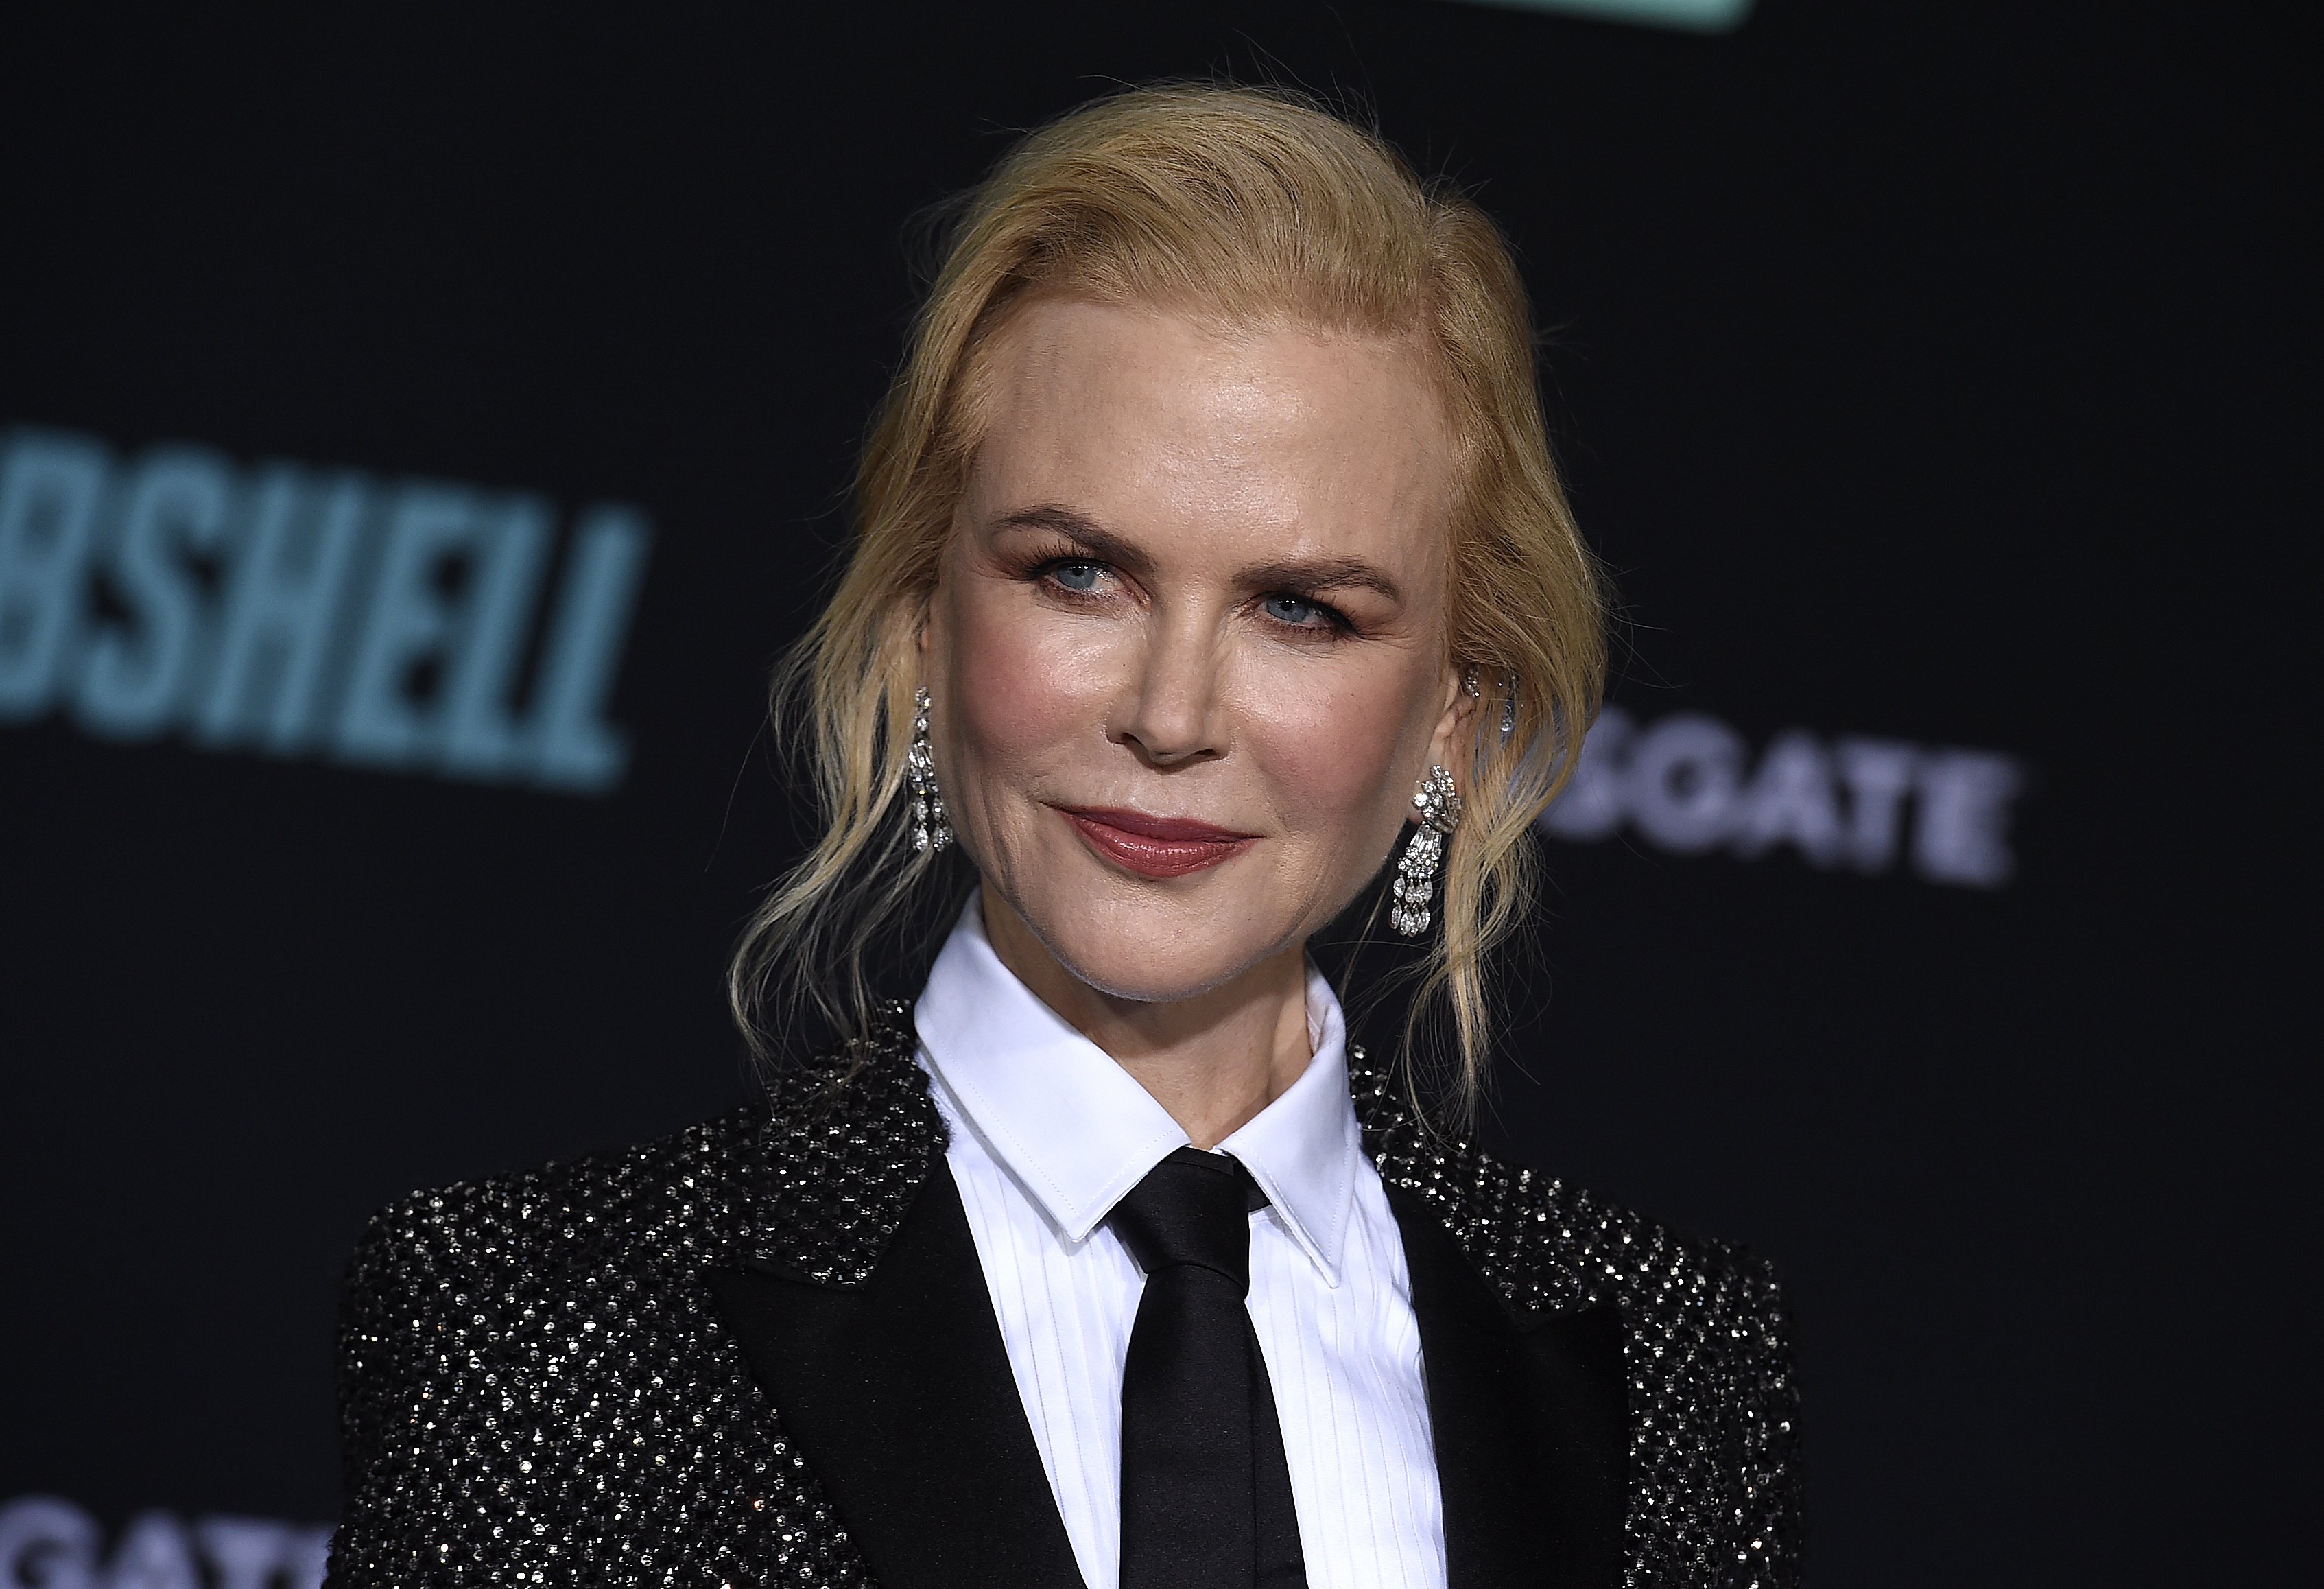 Nicole Kidman ja no és així als 54 anys: més jove amb el bisturí, no sembla ella